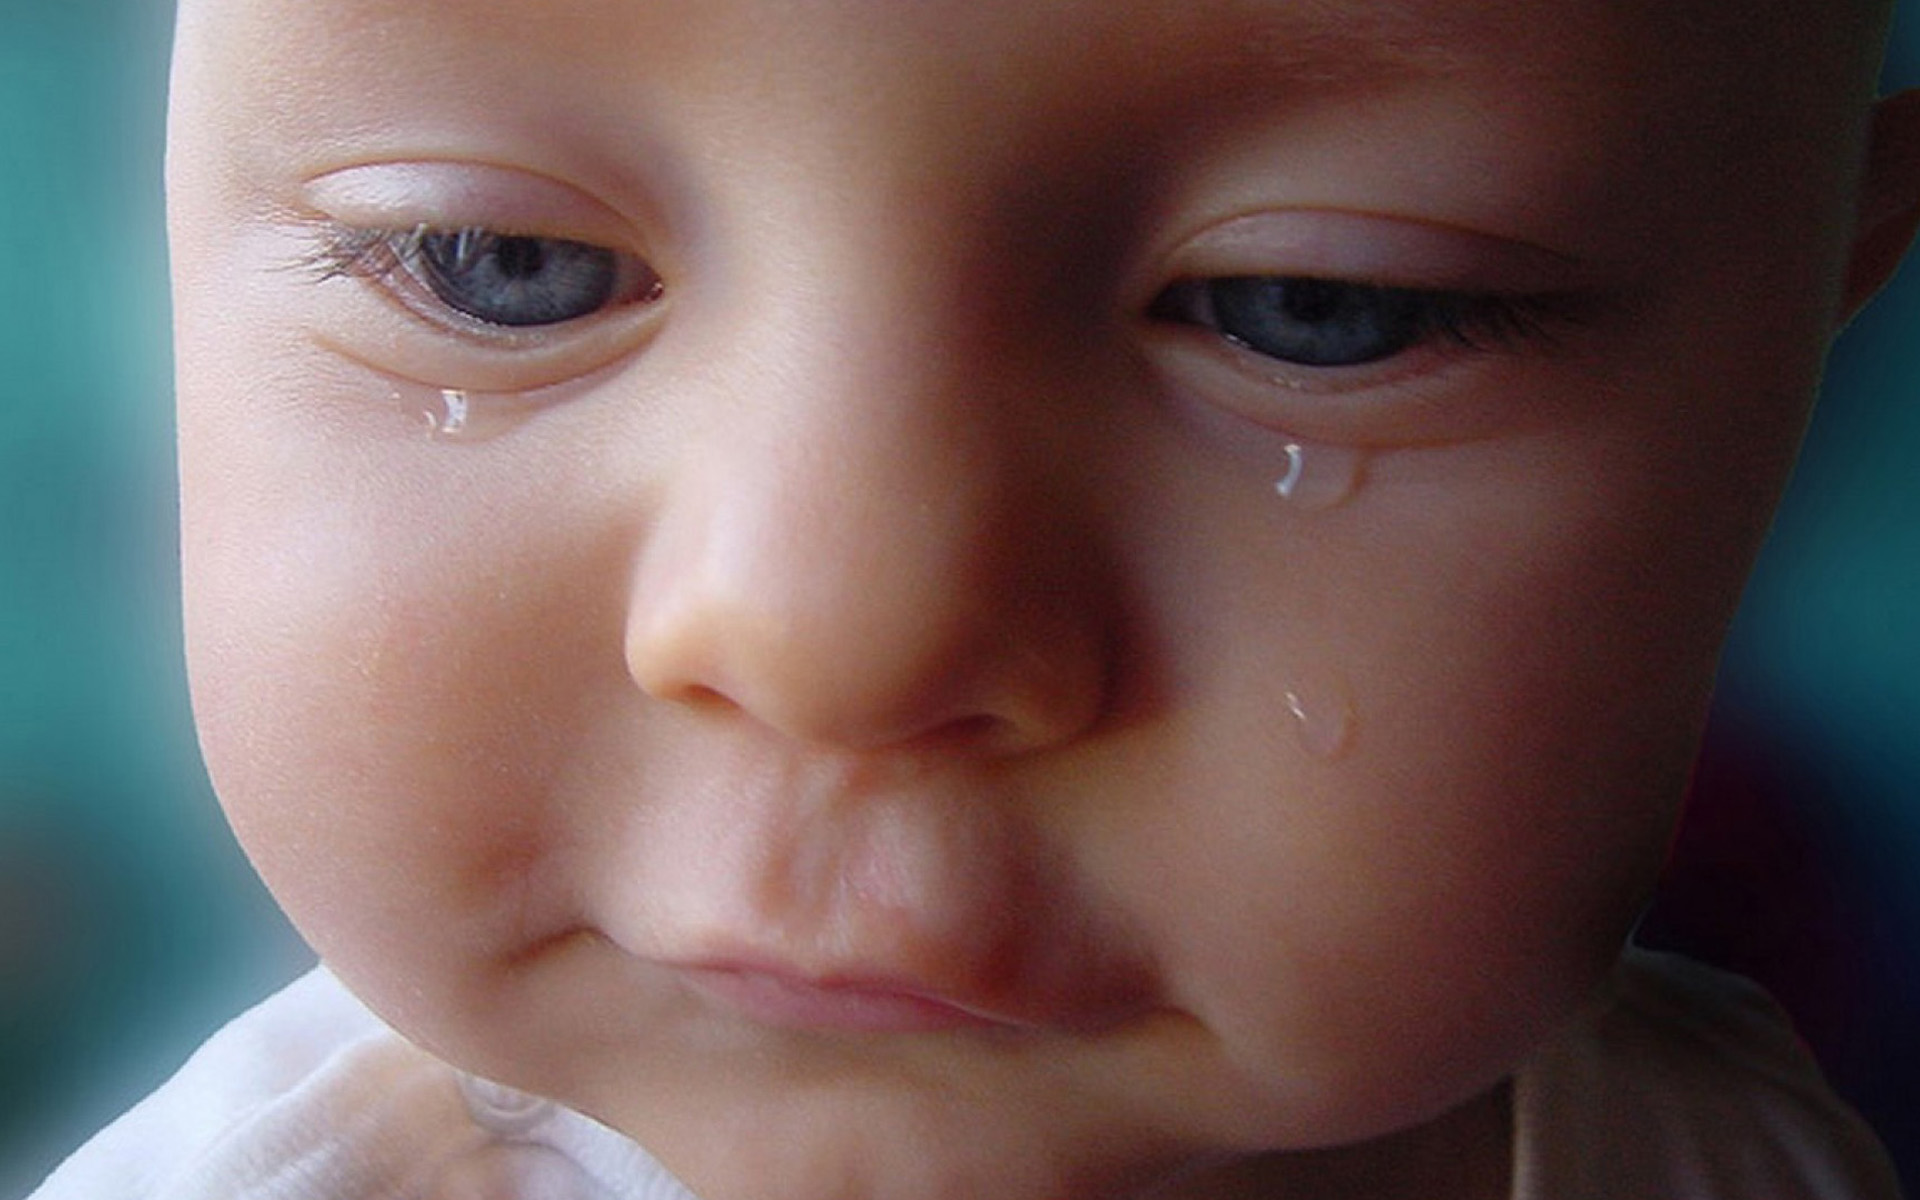 Nhìn thôi đã rợn người rồi! Đó là hình ảnh một em bé đáng yêu đang khóc, nhưng lại khiến người xem vô cùng cảm động và xúc động. Chắc chắn bạn sẽ không thể rời mắt khỏi ánh mắt đáng thương của em bé này. Đừng bỏ qua cơ hội để cảm nhận tình cảm chân thật của một đứa trẻ dễ thương như thế này.